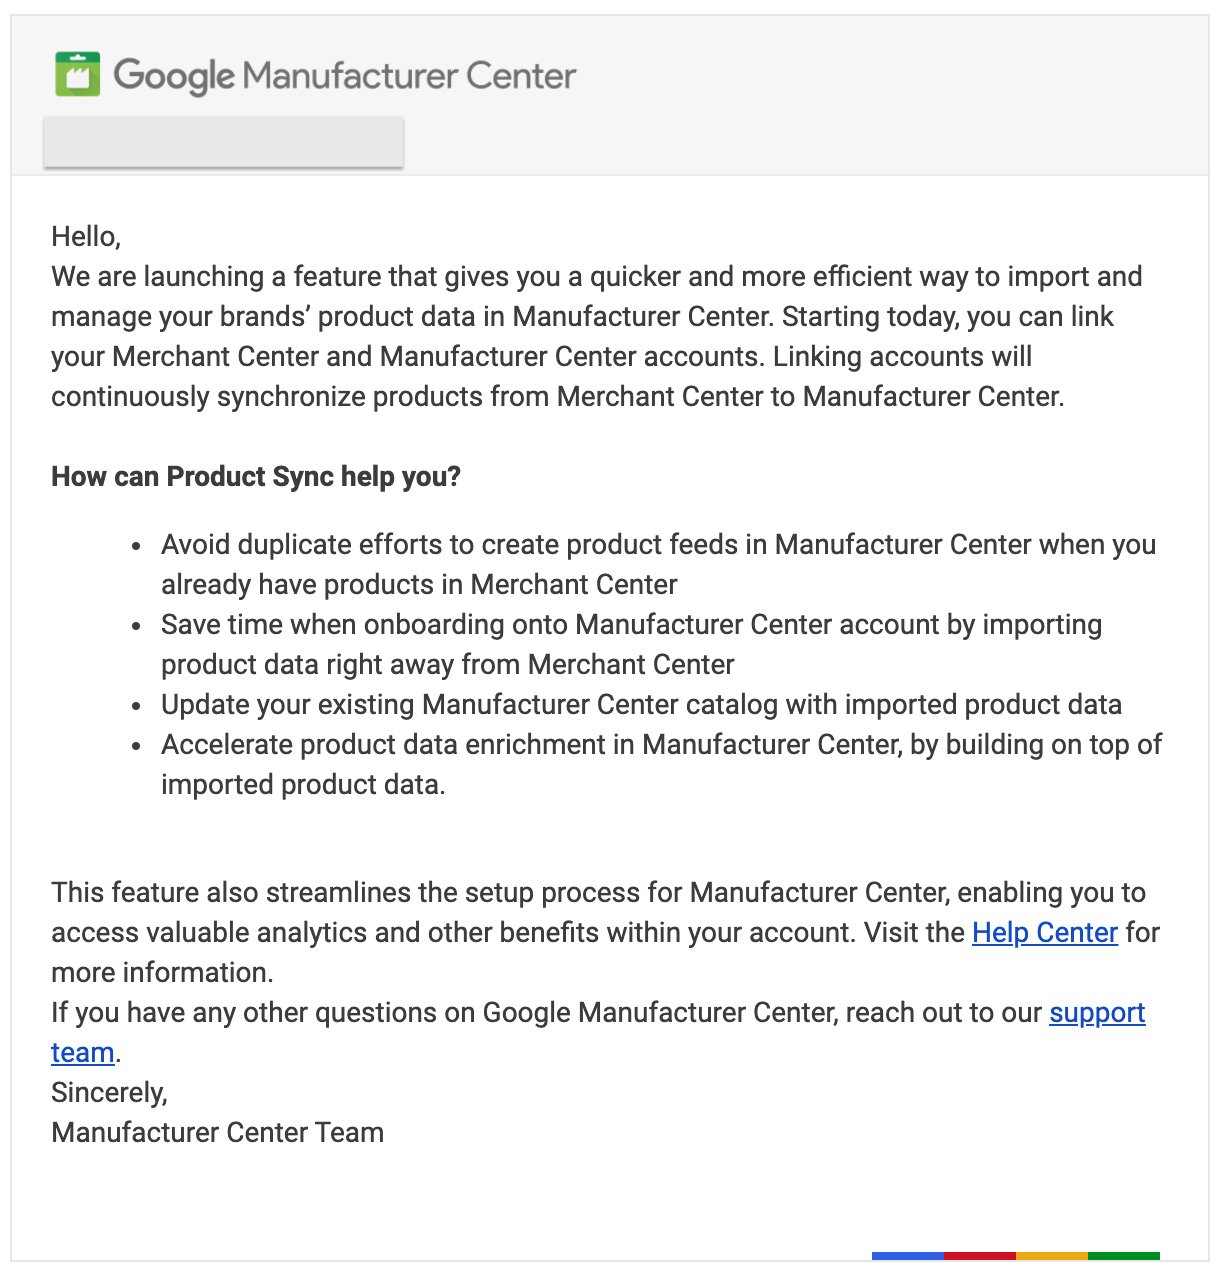 Google синхронизировал данные между Merchant Center и Manufacturer Center